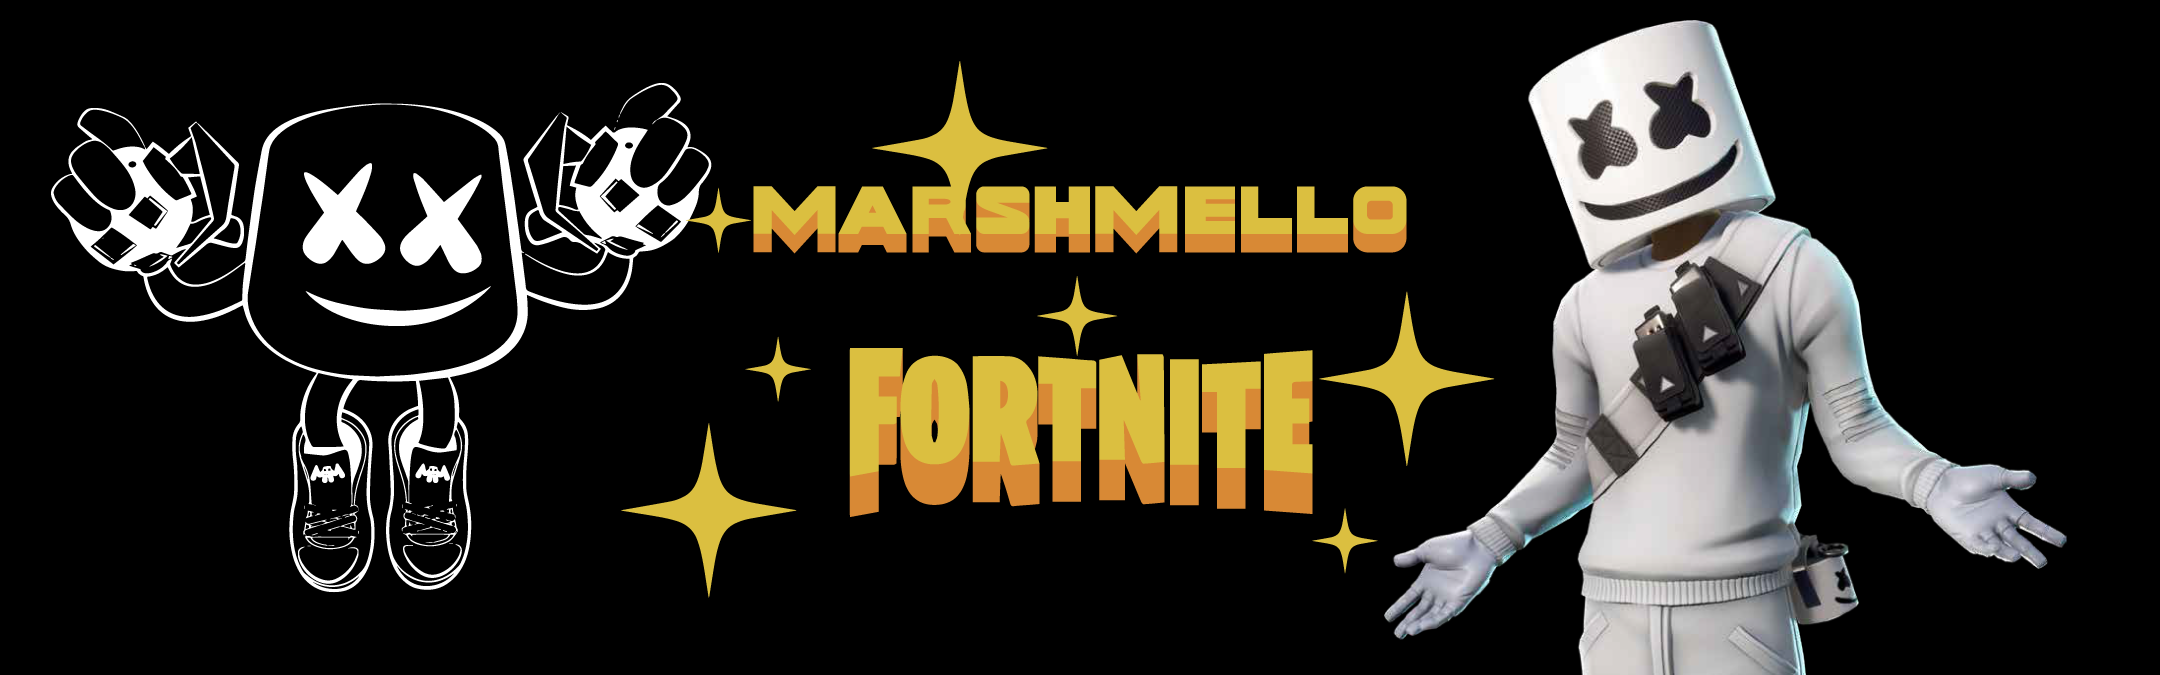 Marshmello X Fortnite 2021